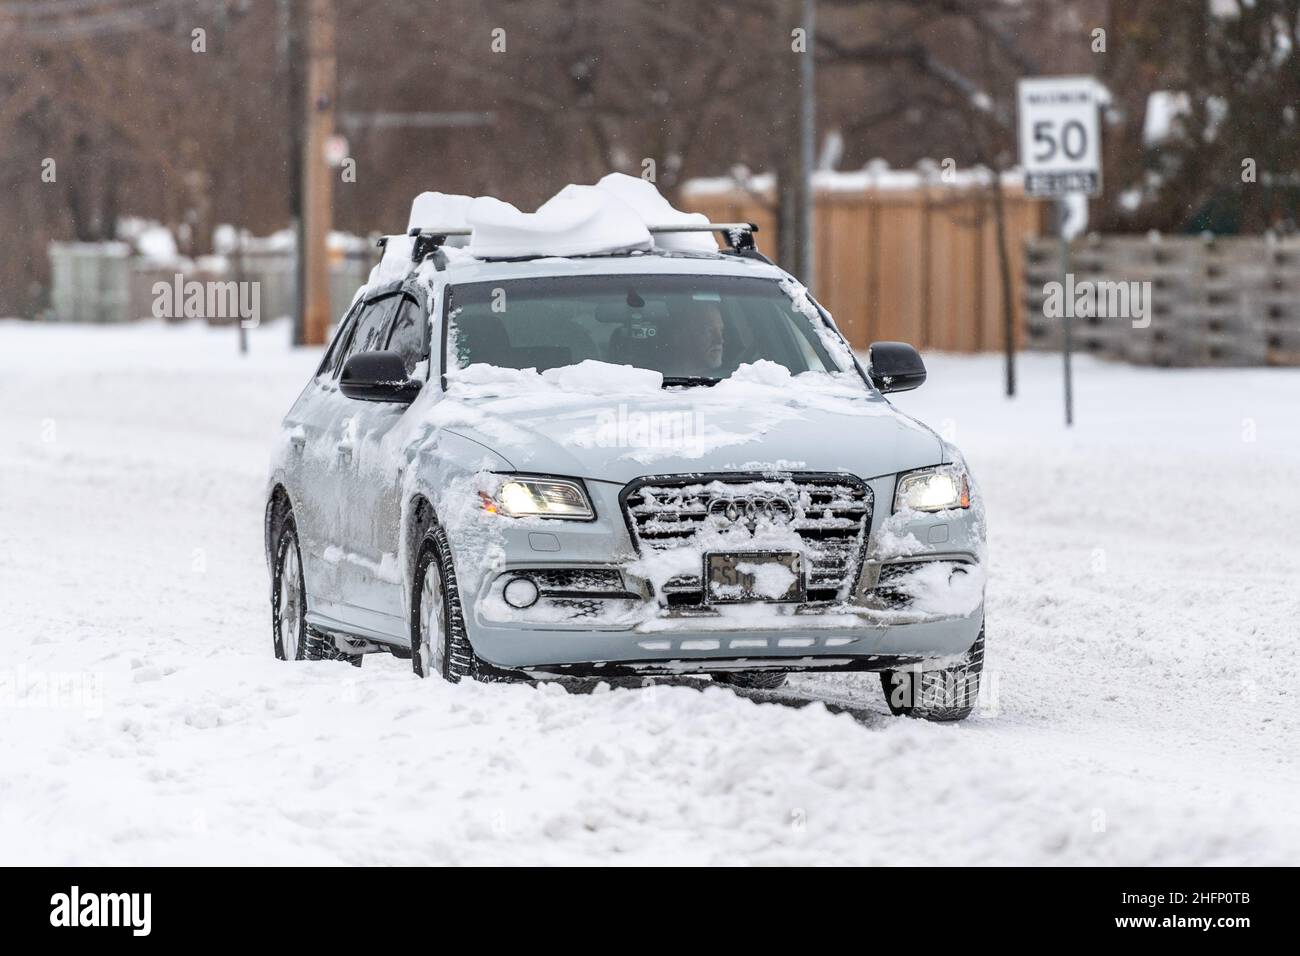 Un'auto Audi guida in Victoria Park Avenue con neve sul suo tetto. L'immagine mostra le condizioni di guida in una tempesta di neve invernale a Toronto, Canada Foto Stock